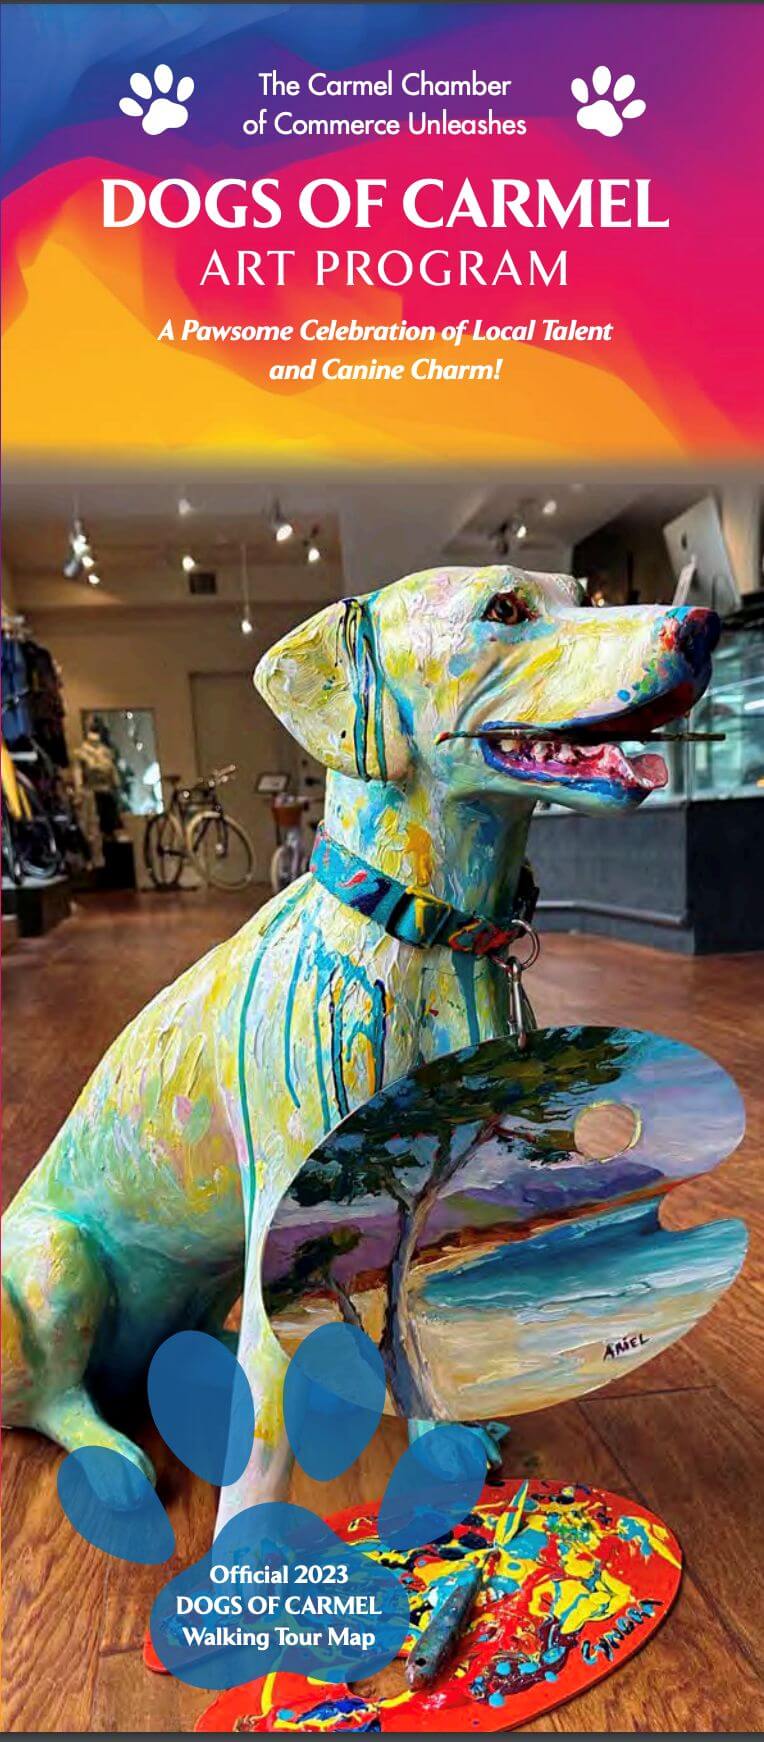 Dogs of Carmel art program